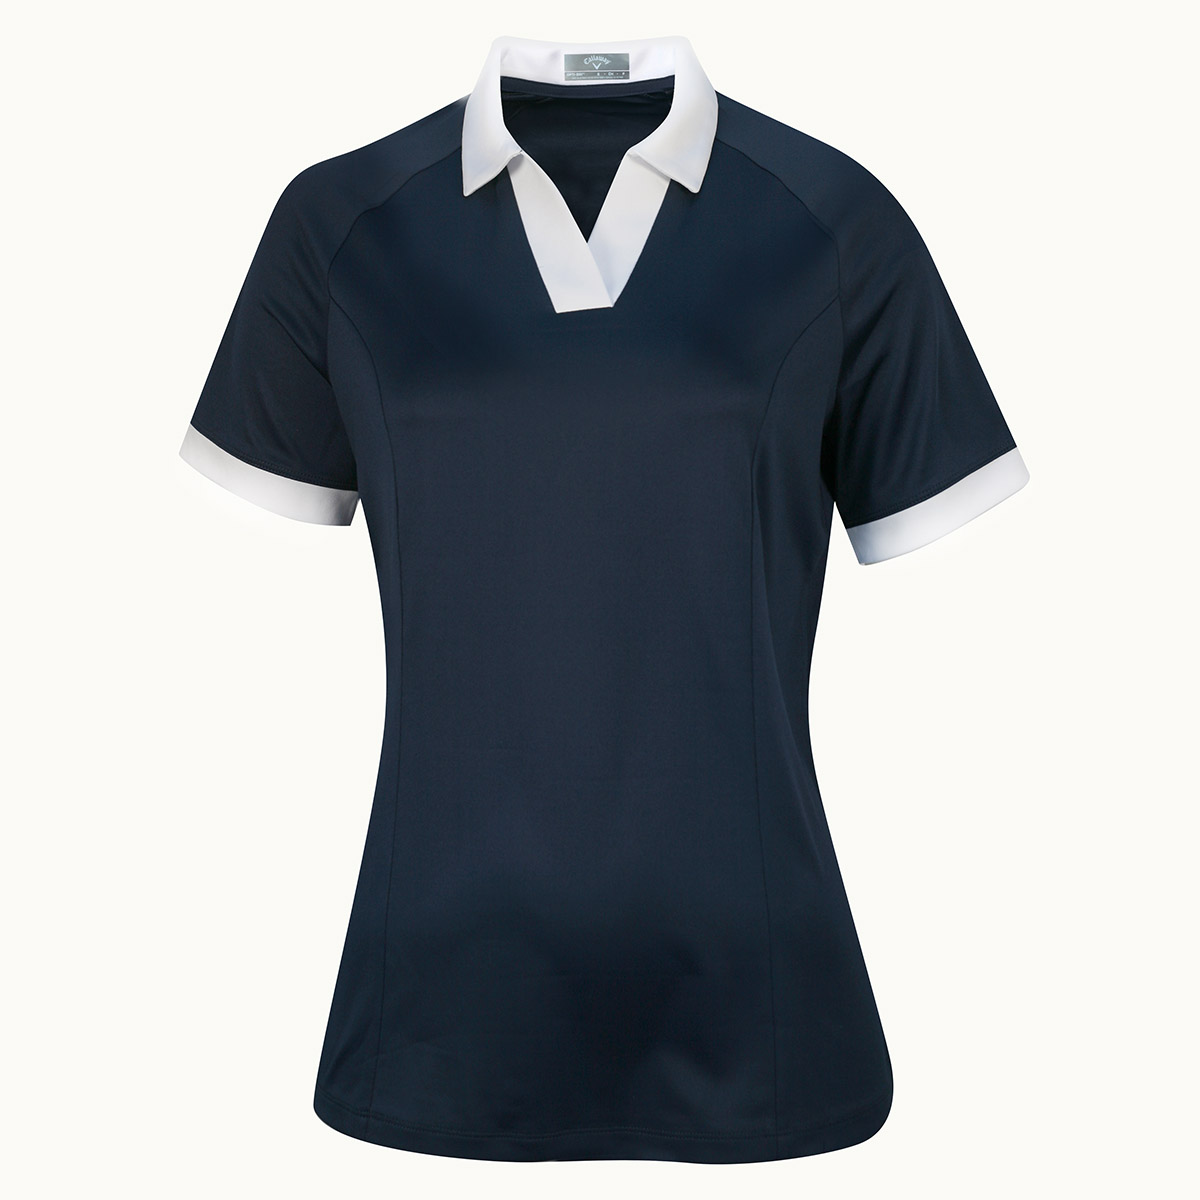 Callaway V-Placket Colourblock dámské golfové triko, tmavě modré, vel. S